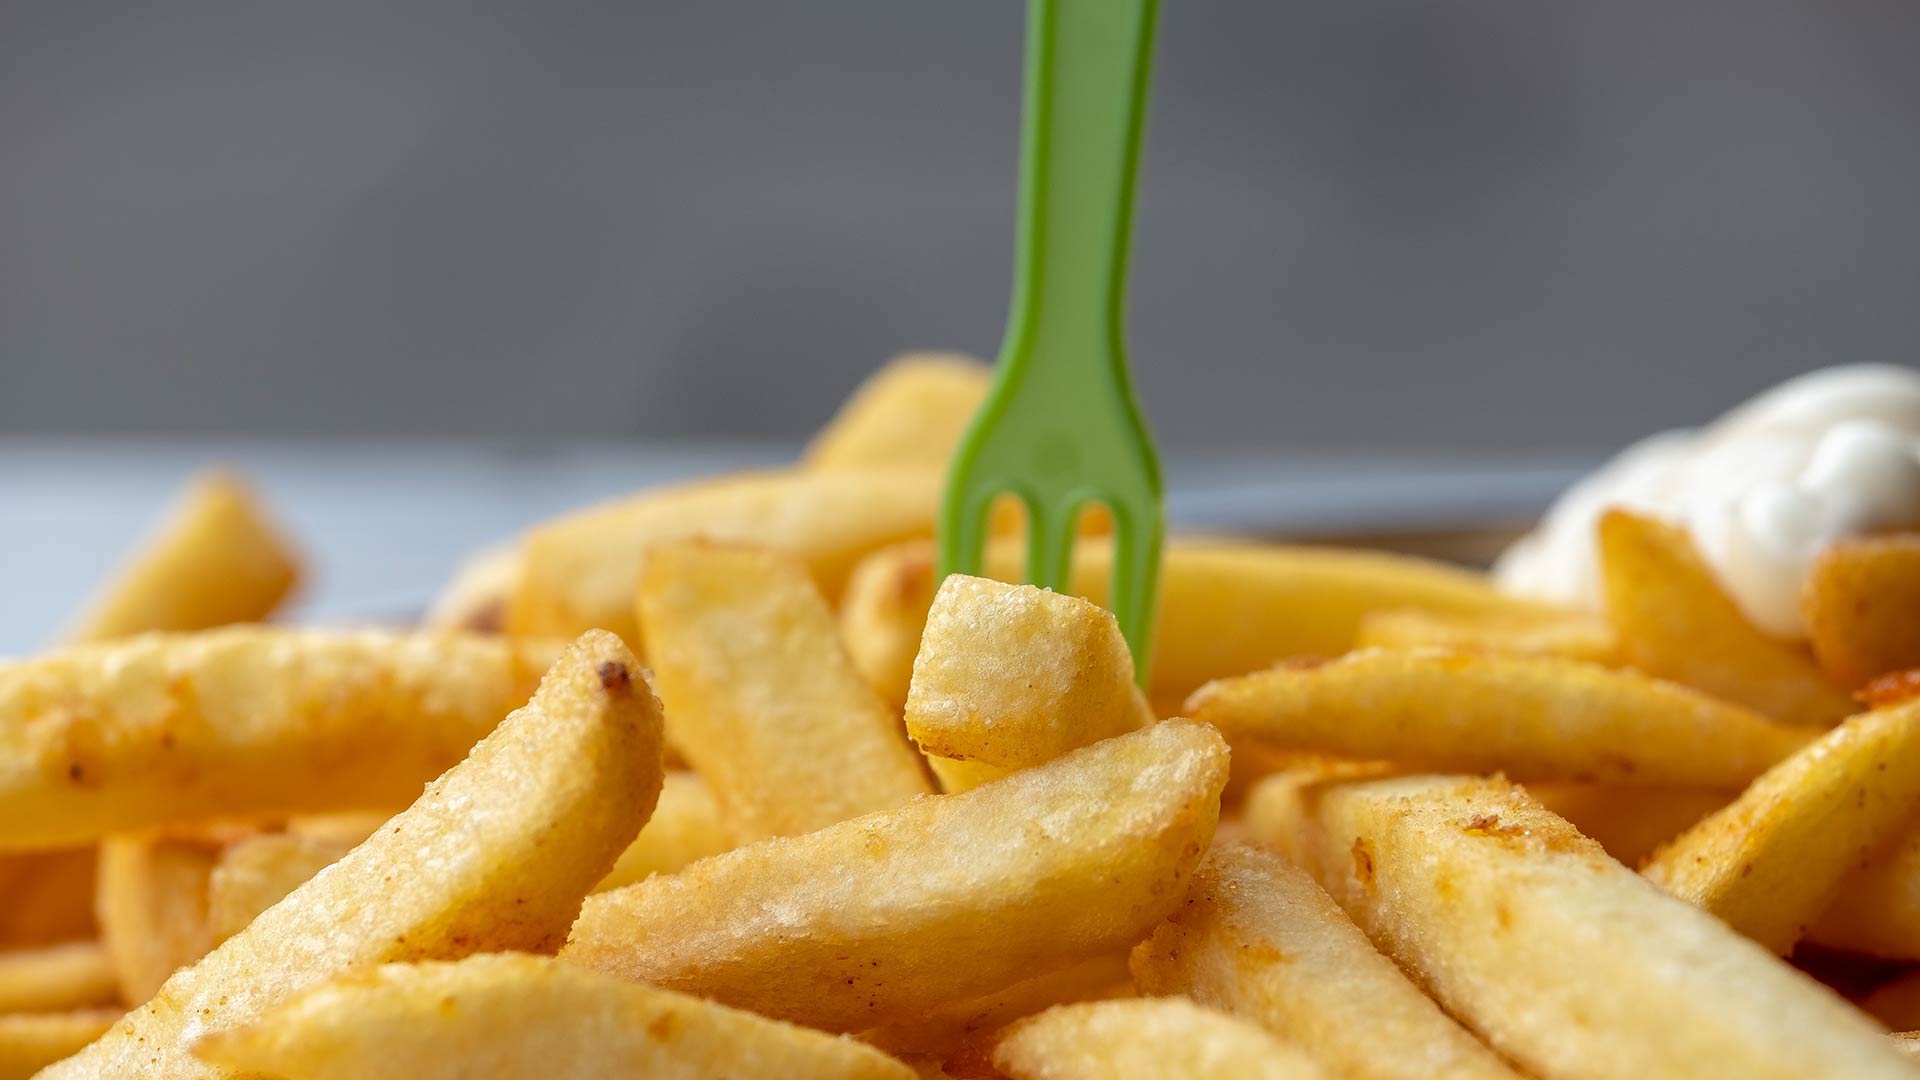 Un adolescente se queda ciego por alimentarse solo de patatas fritas